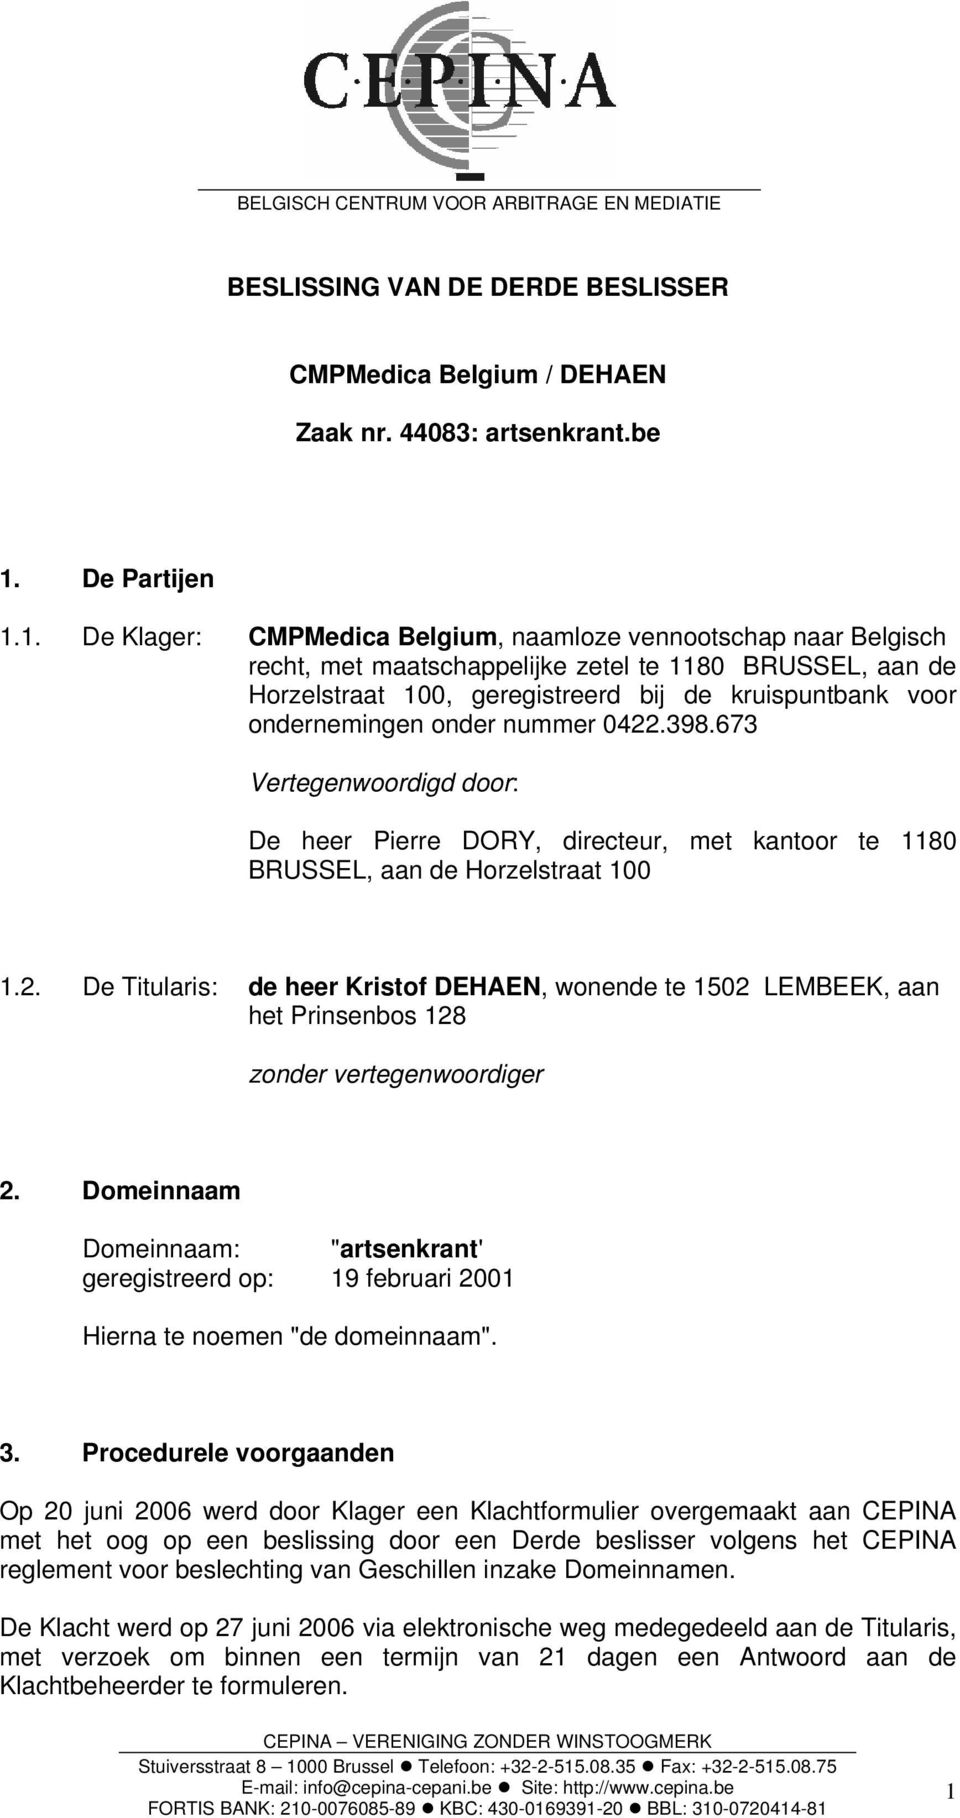 1. De Klager: CMPMedica Belgium, naamloze vennootschap naar Belgisch recht, met maatschappelijke zetel te 1180 BRUSSEL, aan de Horzelstraat 100, geregistreerd bij de kruispuntbank voor ondernemingen